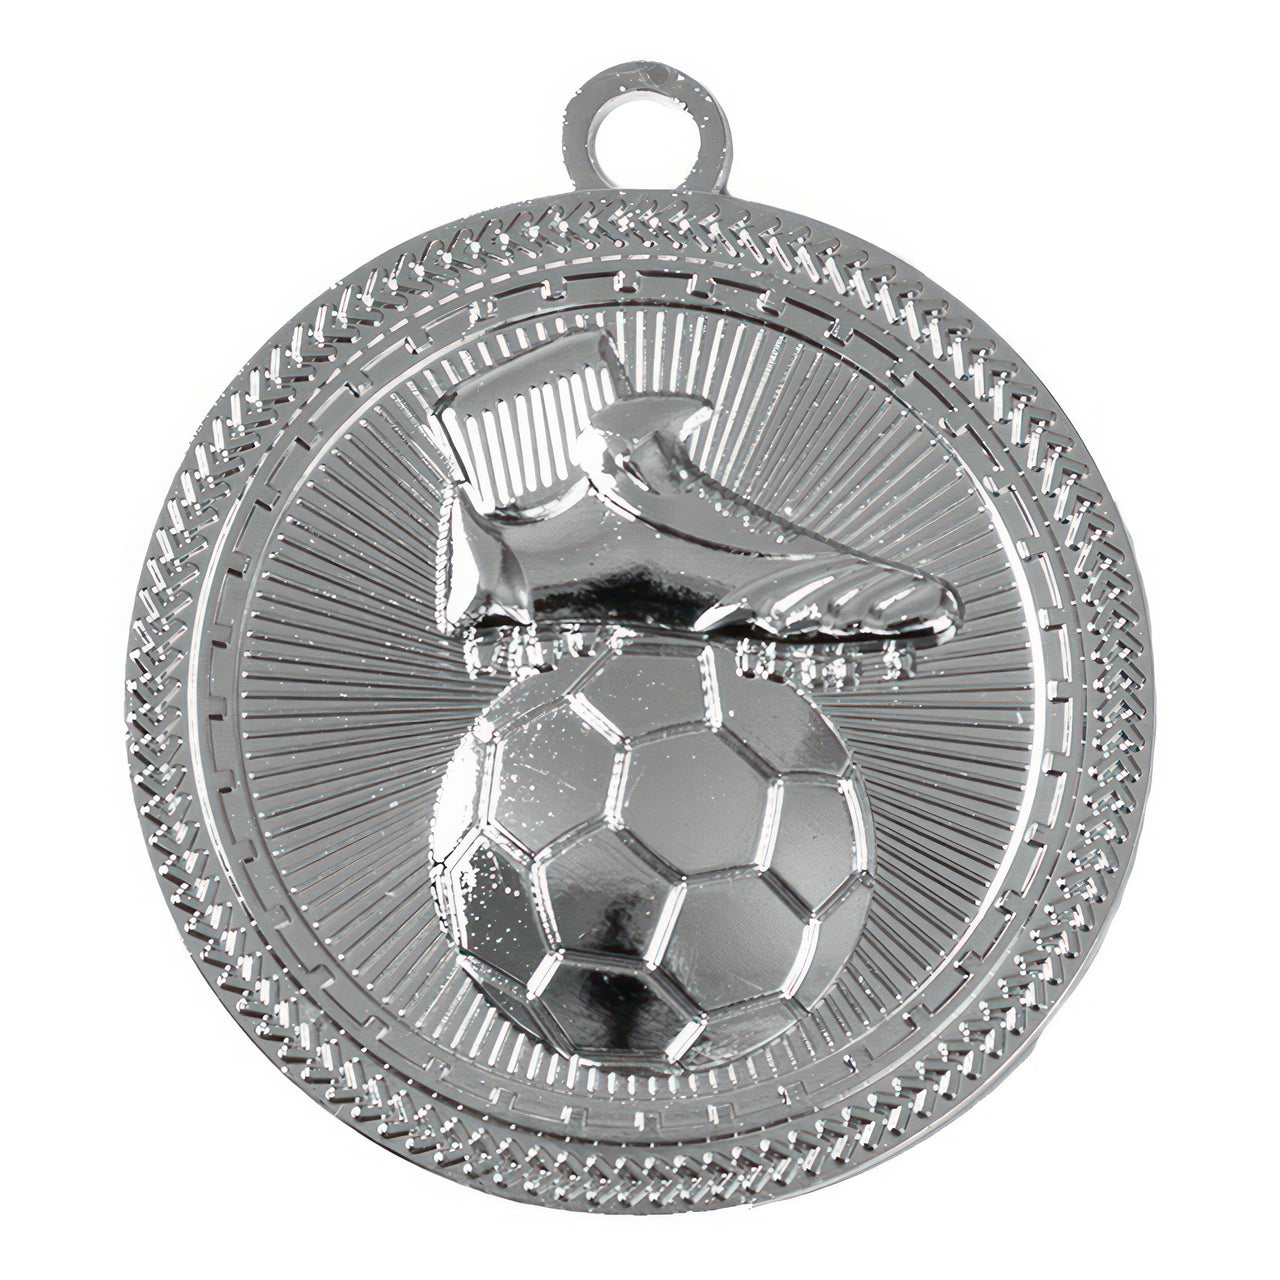 Eine exklusive Auszeichnung: Eine Silbermedaille mit dem Relief des Fußballschuh Medaillen Lübeck 50 mm PK79238 und Bälle von POMEKI.